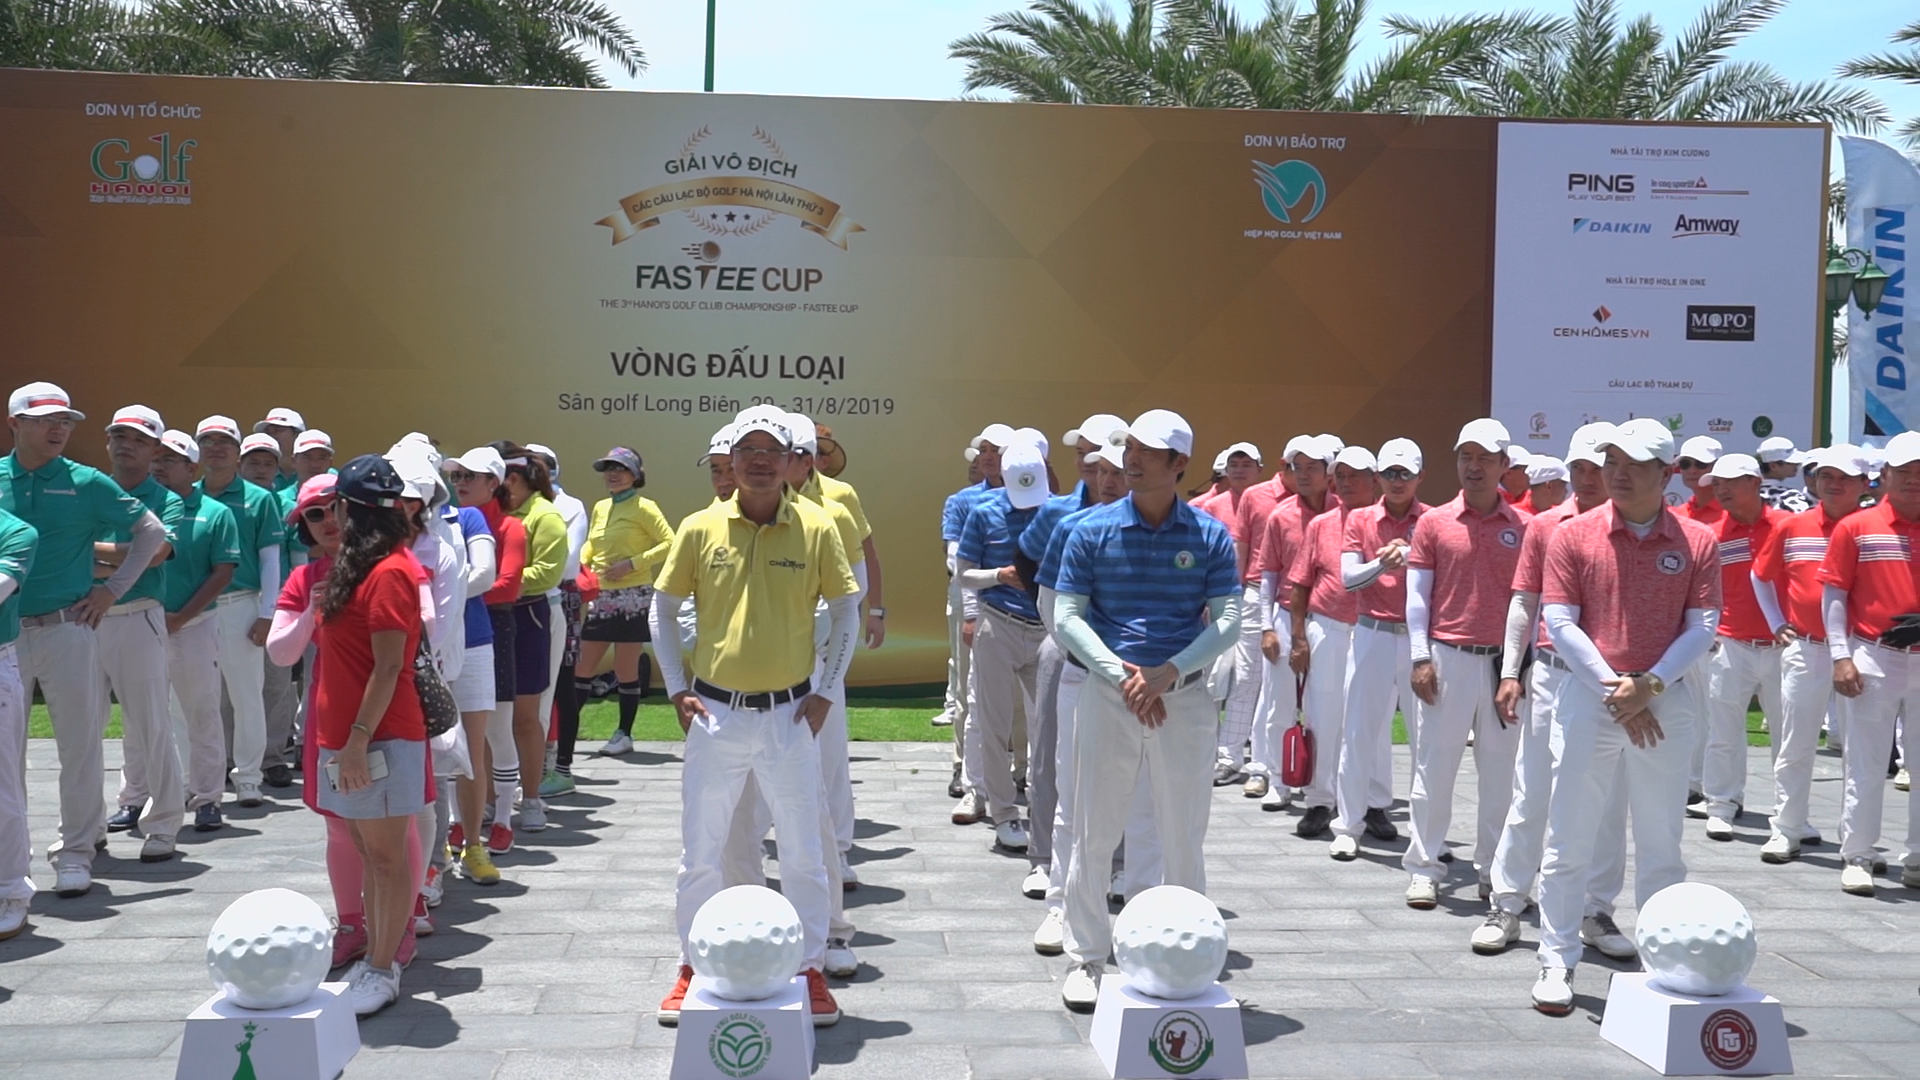 Vòng loại giải Vô địch các CLB Golf Hà Nội 2019 đã chính thức diễn ra